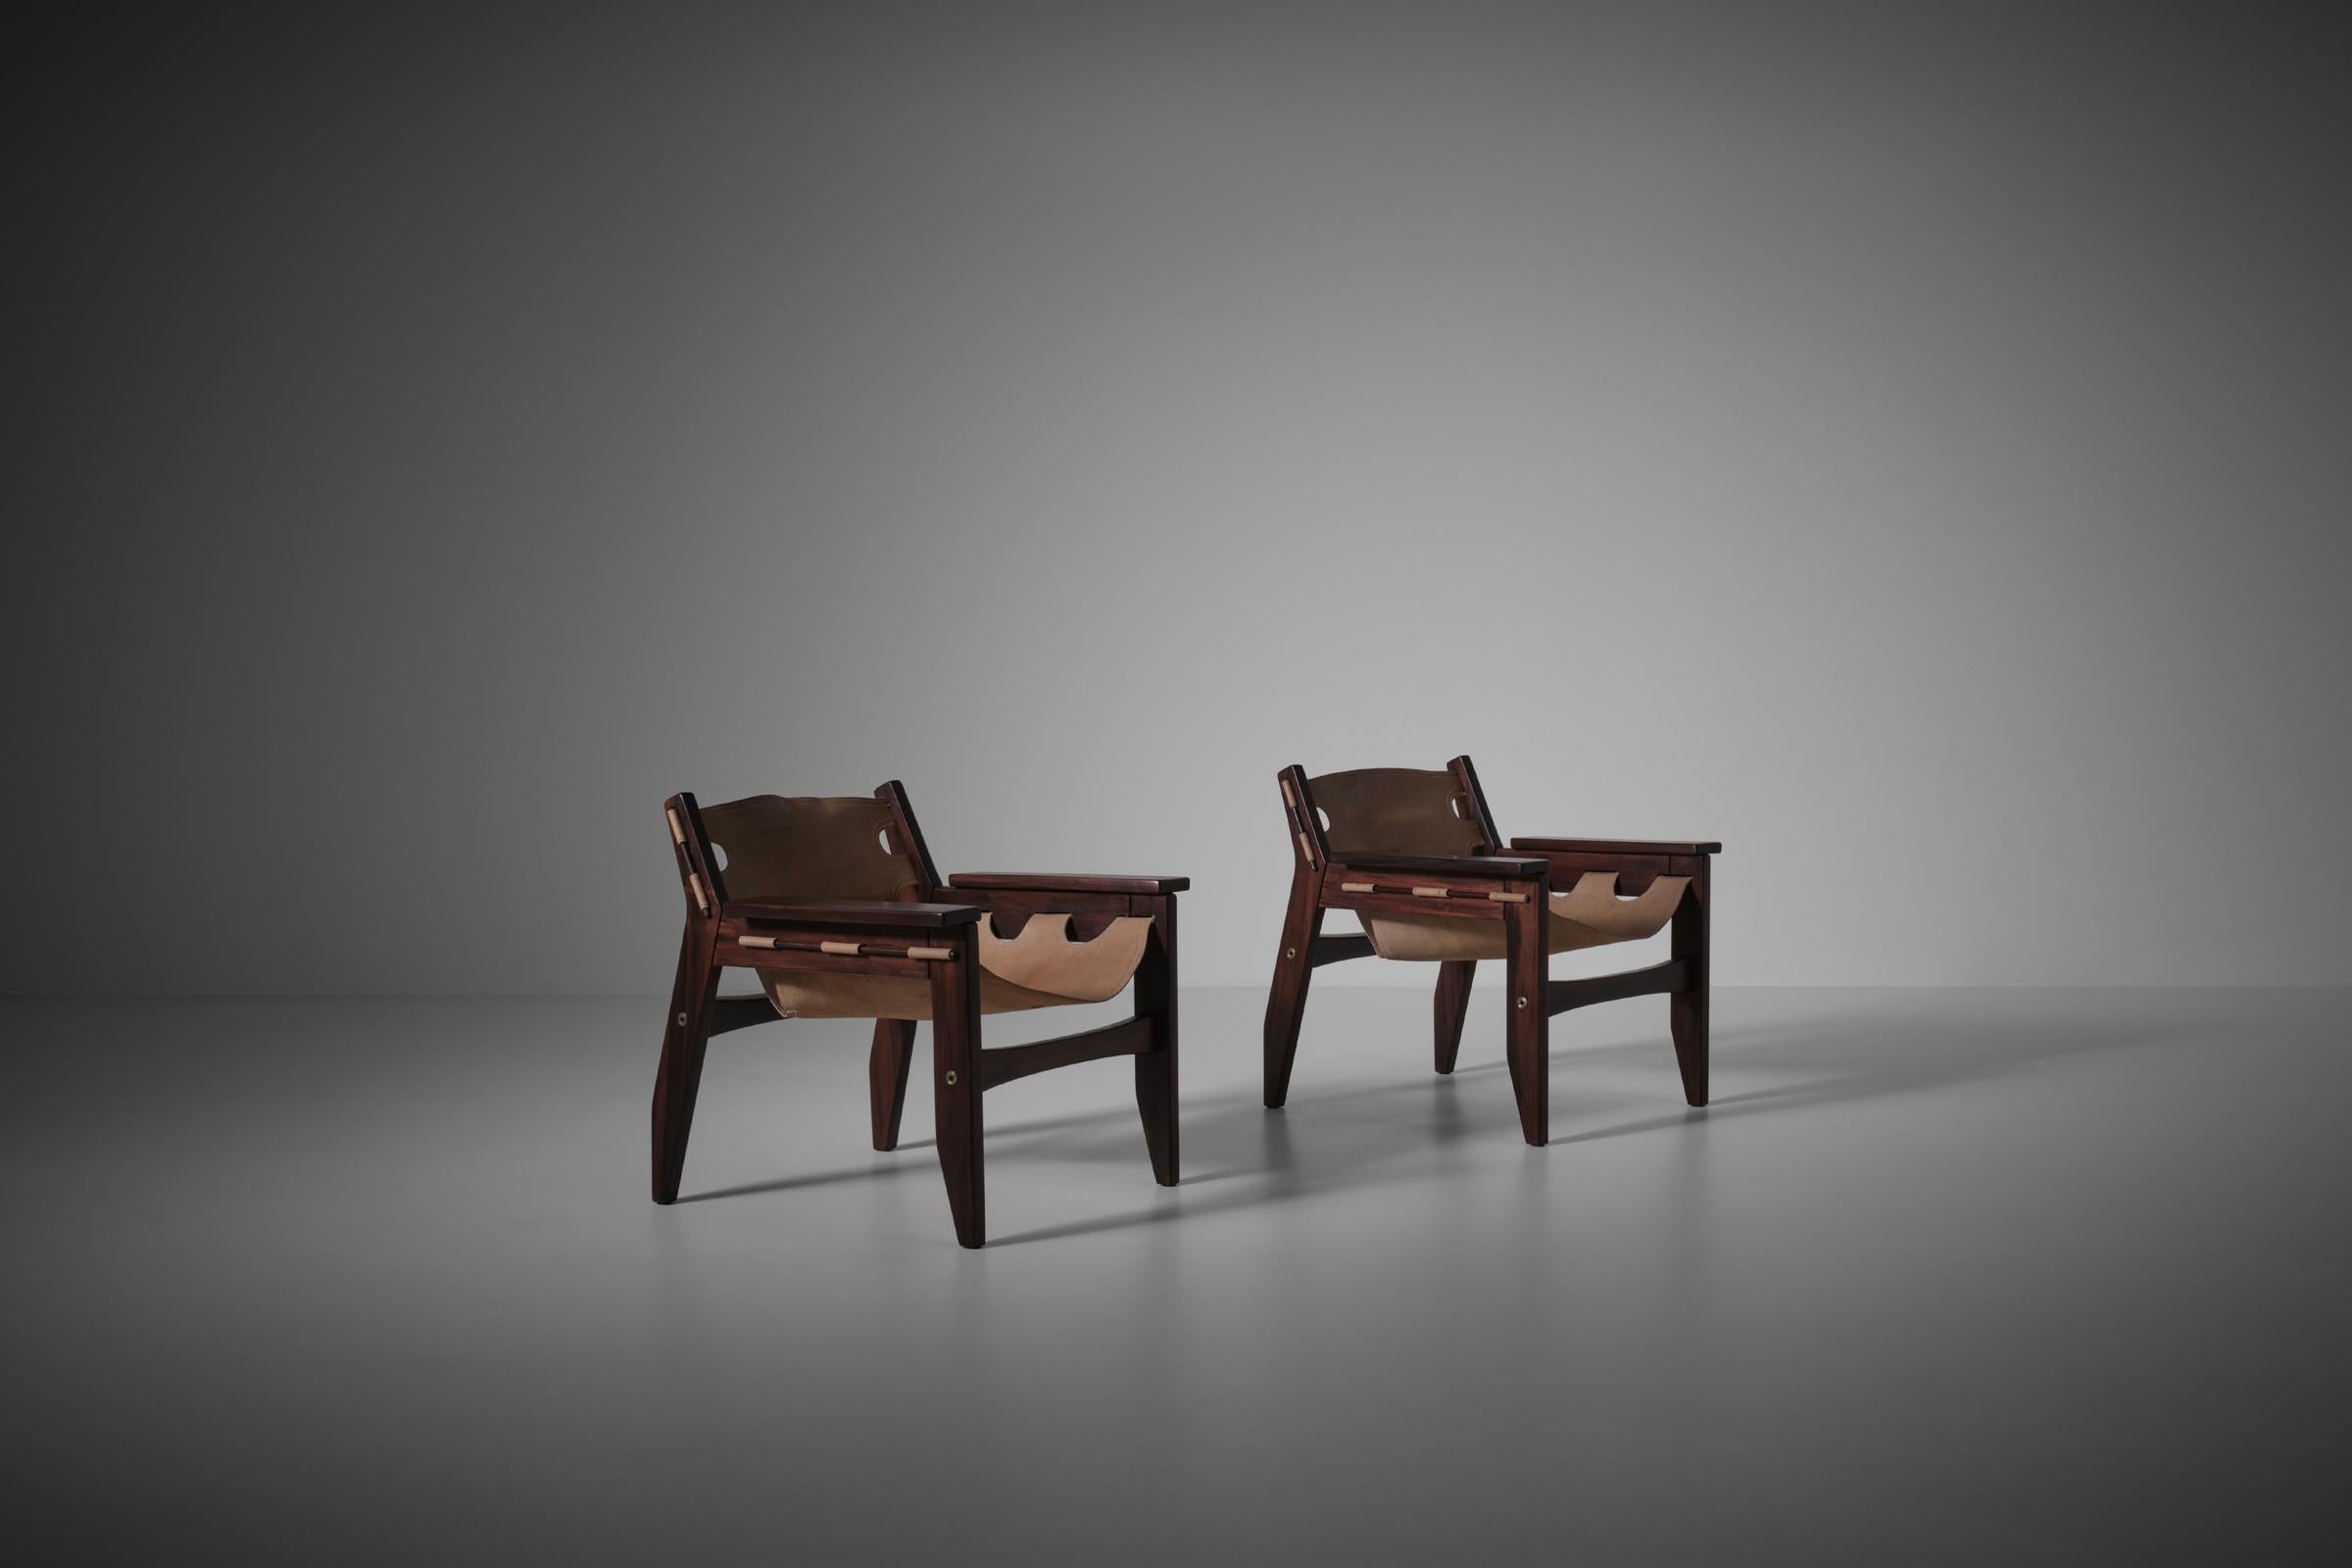 Paire de chaises longues 'Kilin' de Sergio Rodrigues pour Oca, Brésil 1973. Design distinctif en jacaranda et cuir de selle de couleur naturelle. Fauteuils confortables en très bon état d'origine avec une très belle patine sur le cuir.